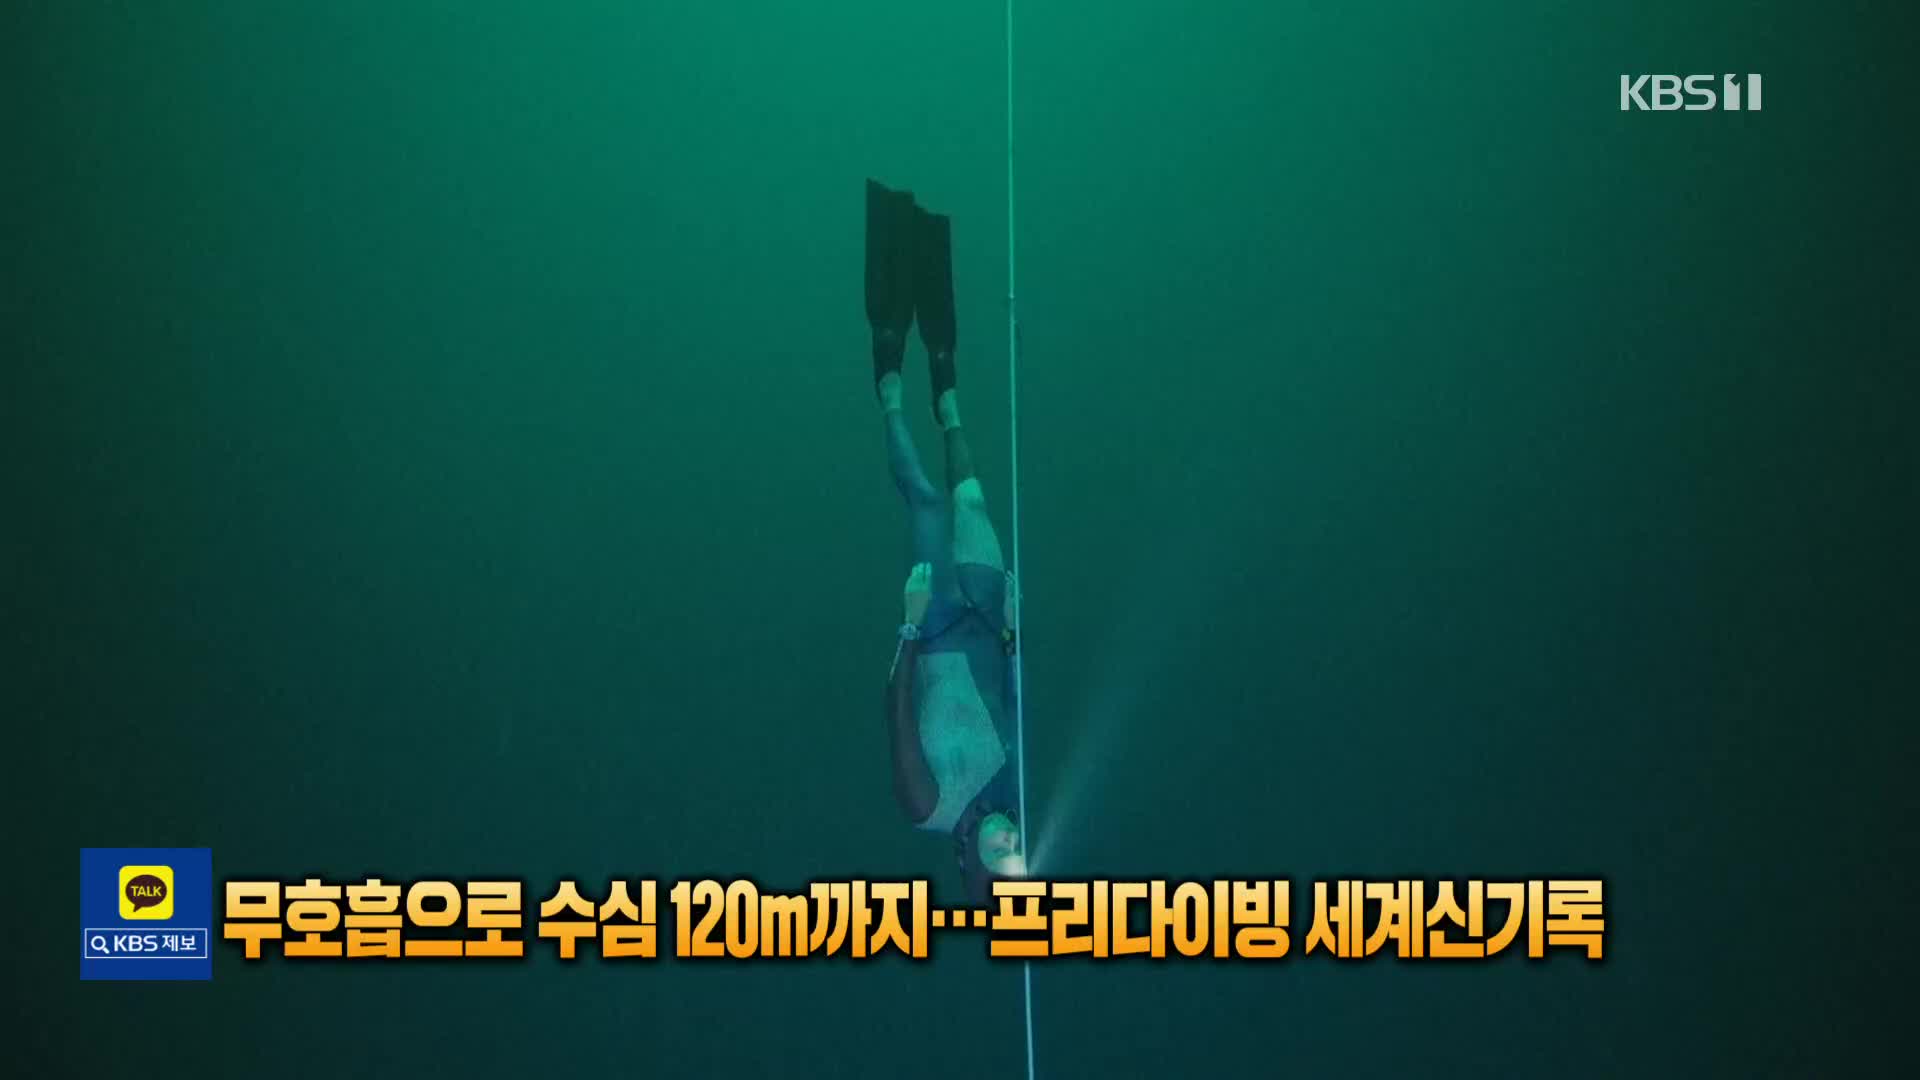 [톡톡 지구촌] 무호흡으로 수심 120m까지…프리다이빙 세계신기록